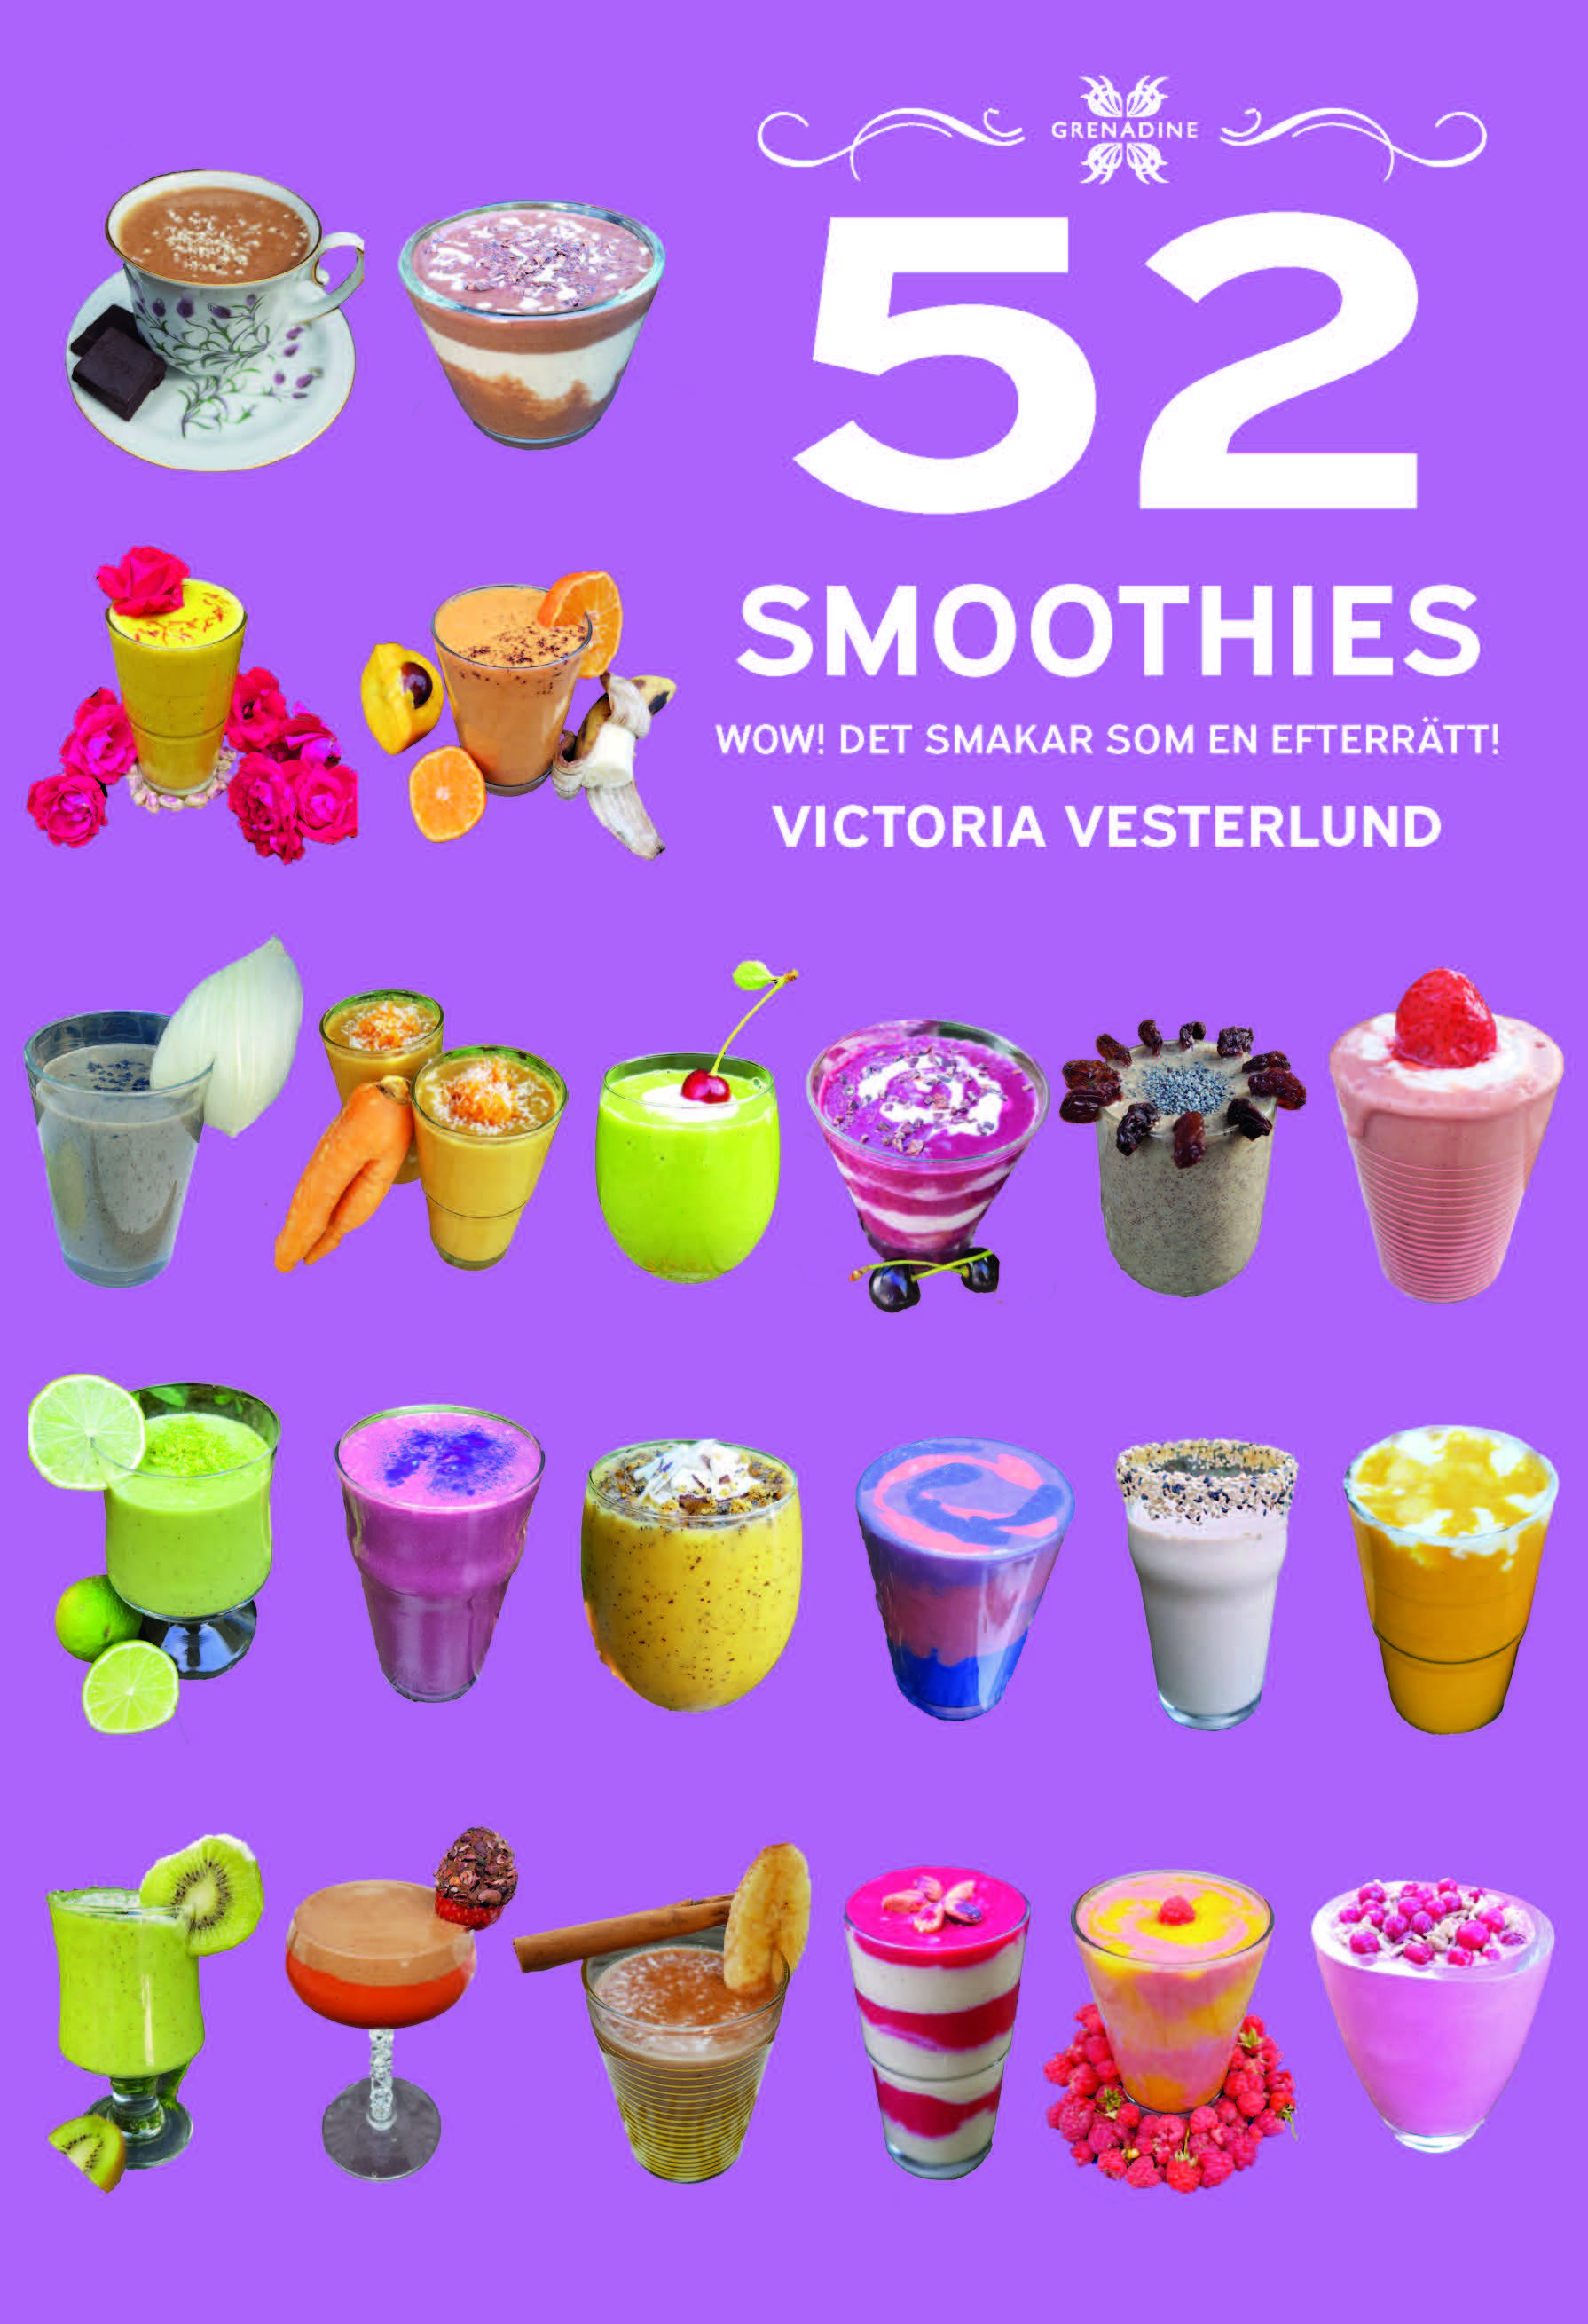 52 Smoothies: Wow! Det smakar som en efterrätt! av Victoria Vesterlund, Grenadine Bokförlag.